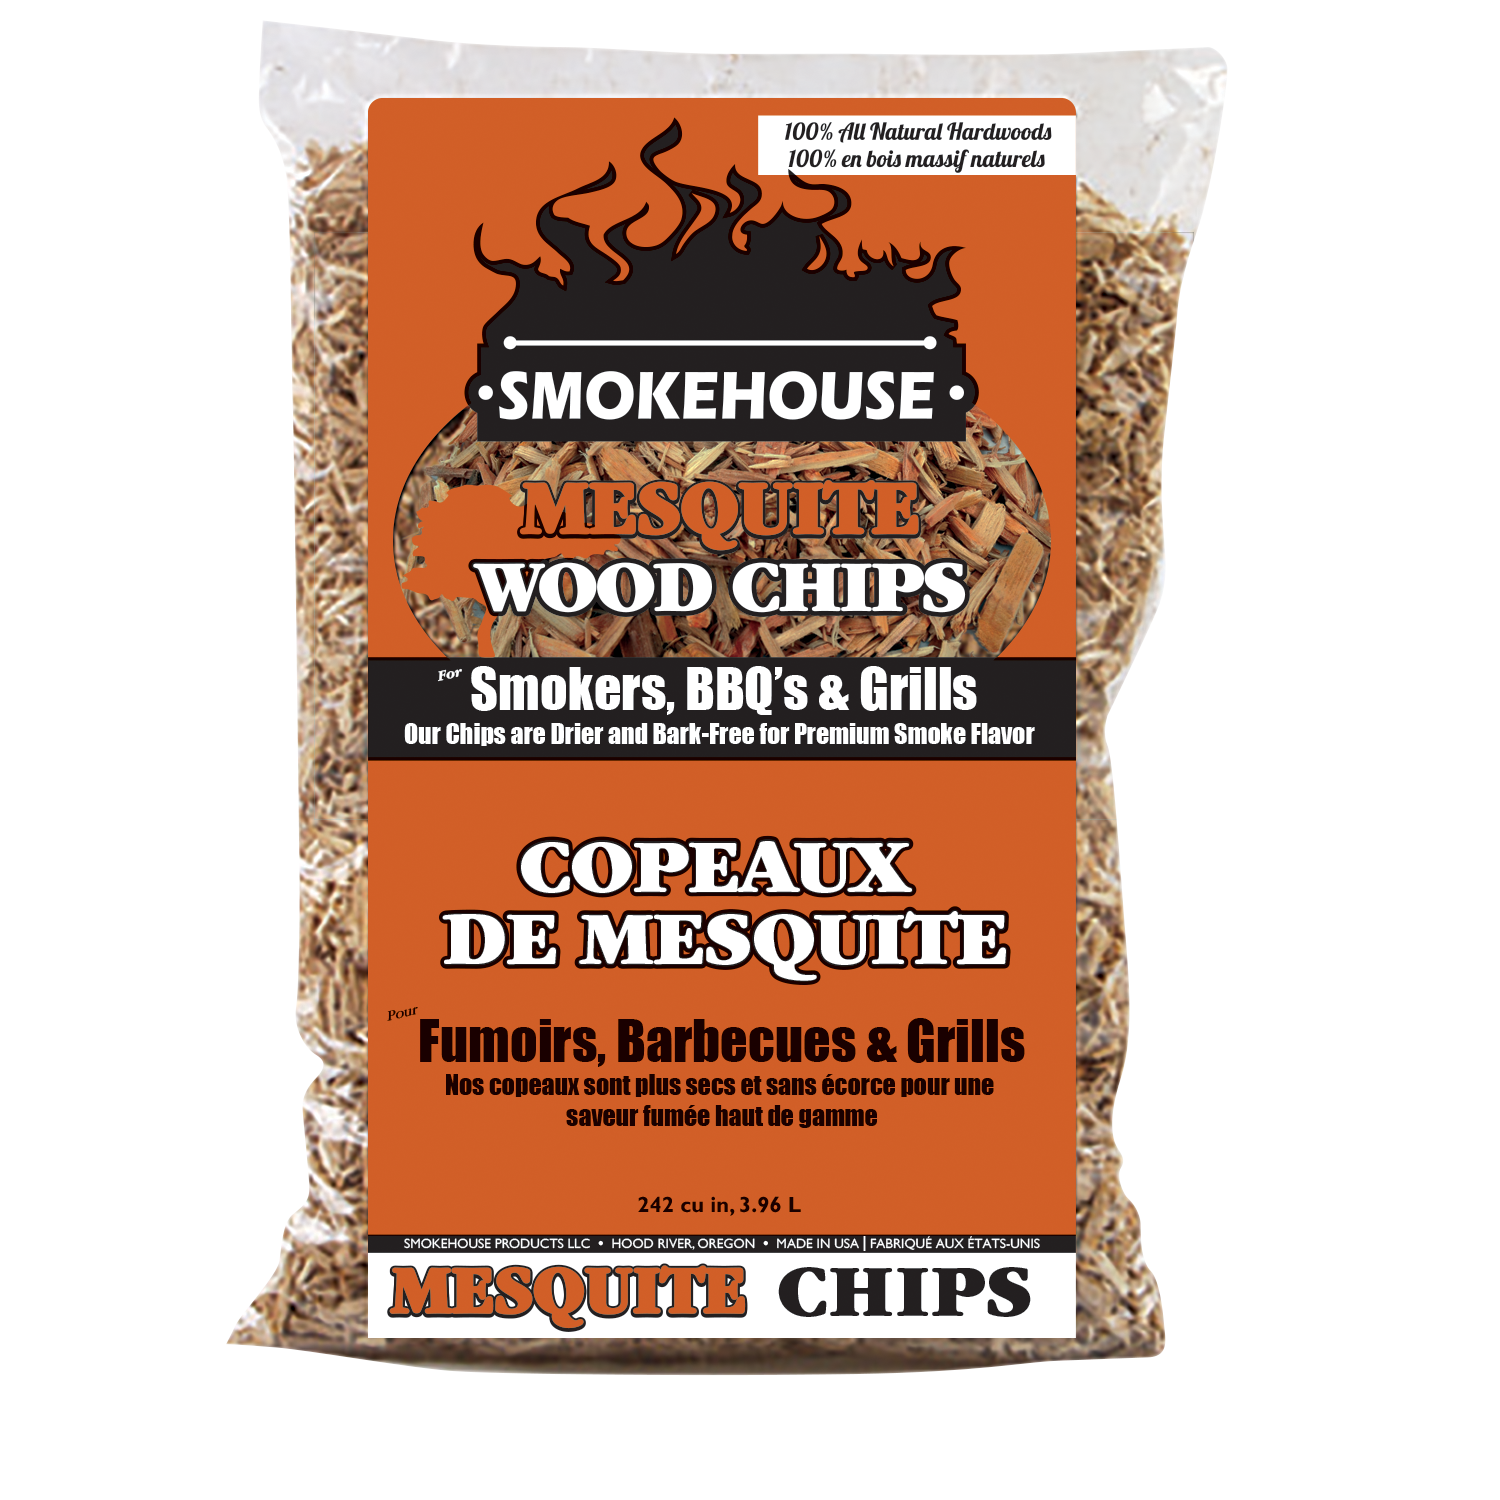 Copeaux de bois D'AULNE de Smokehouse products